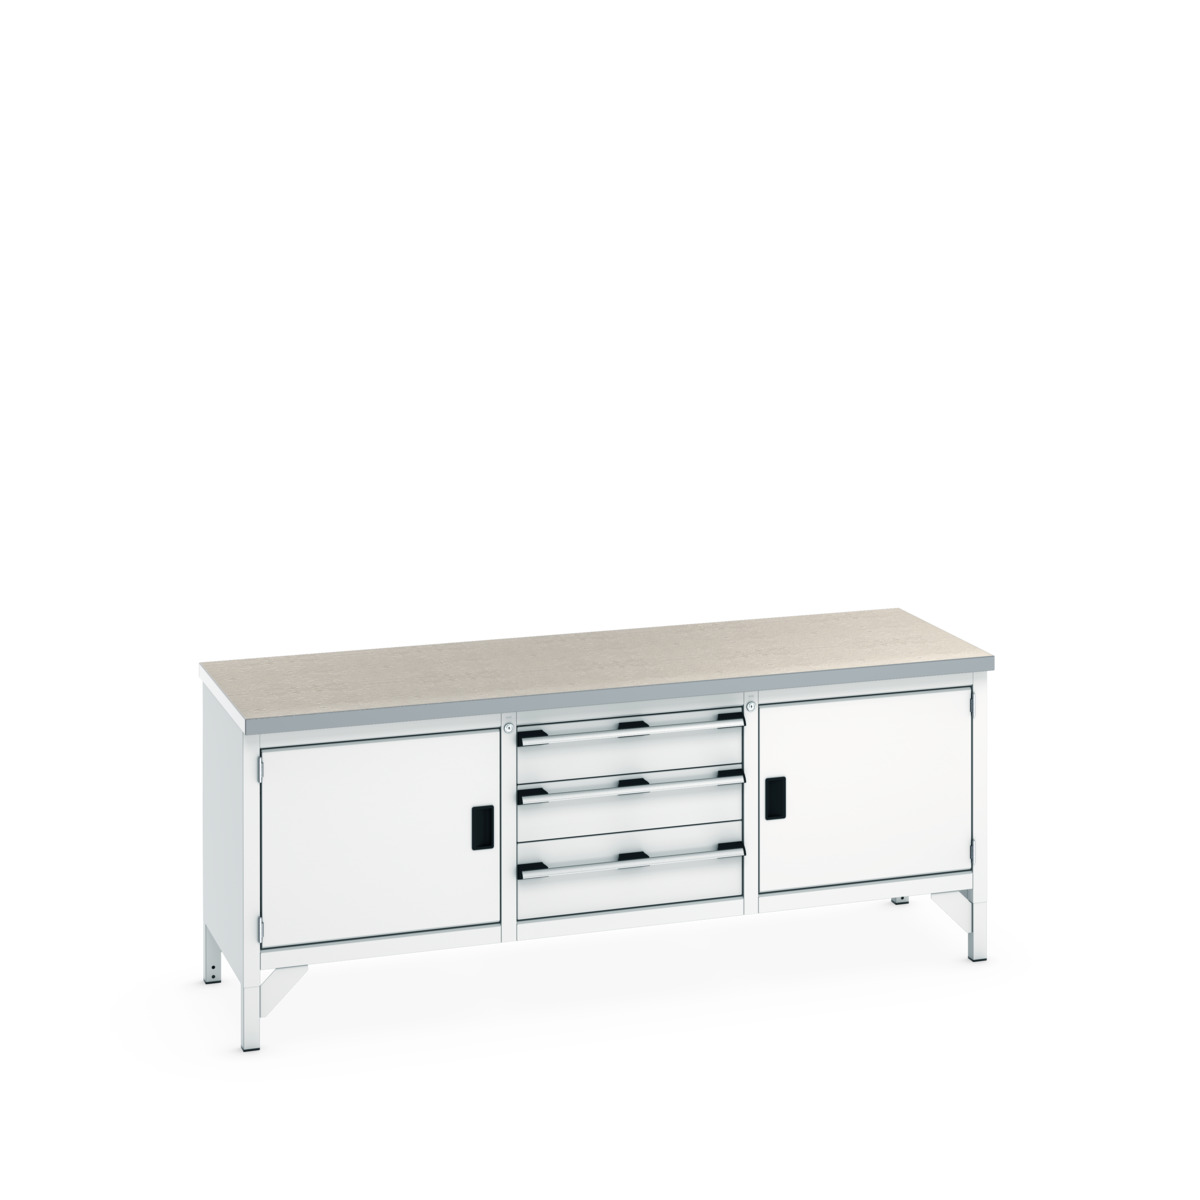 41002057.16V - cubio storage bench (lino)